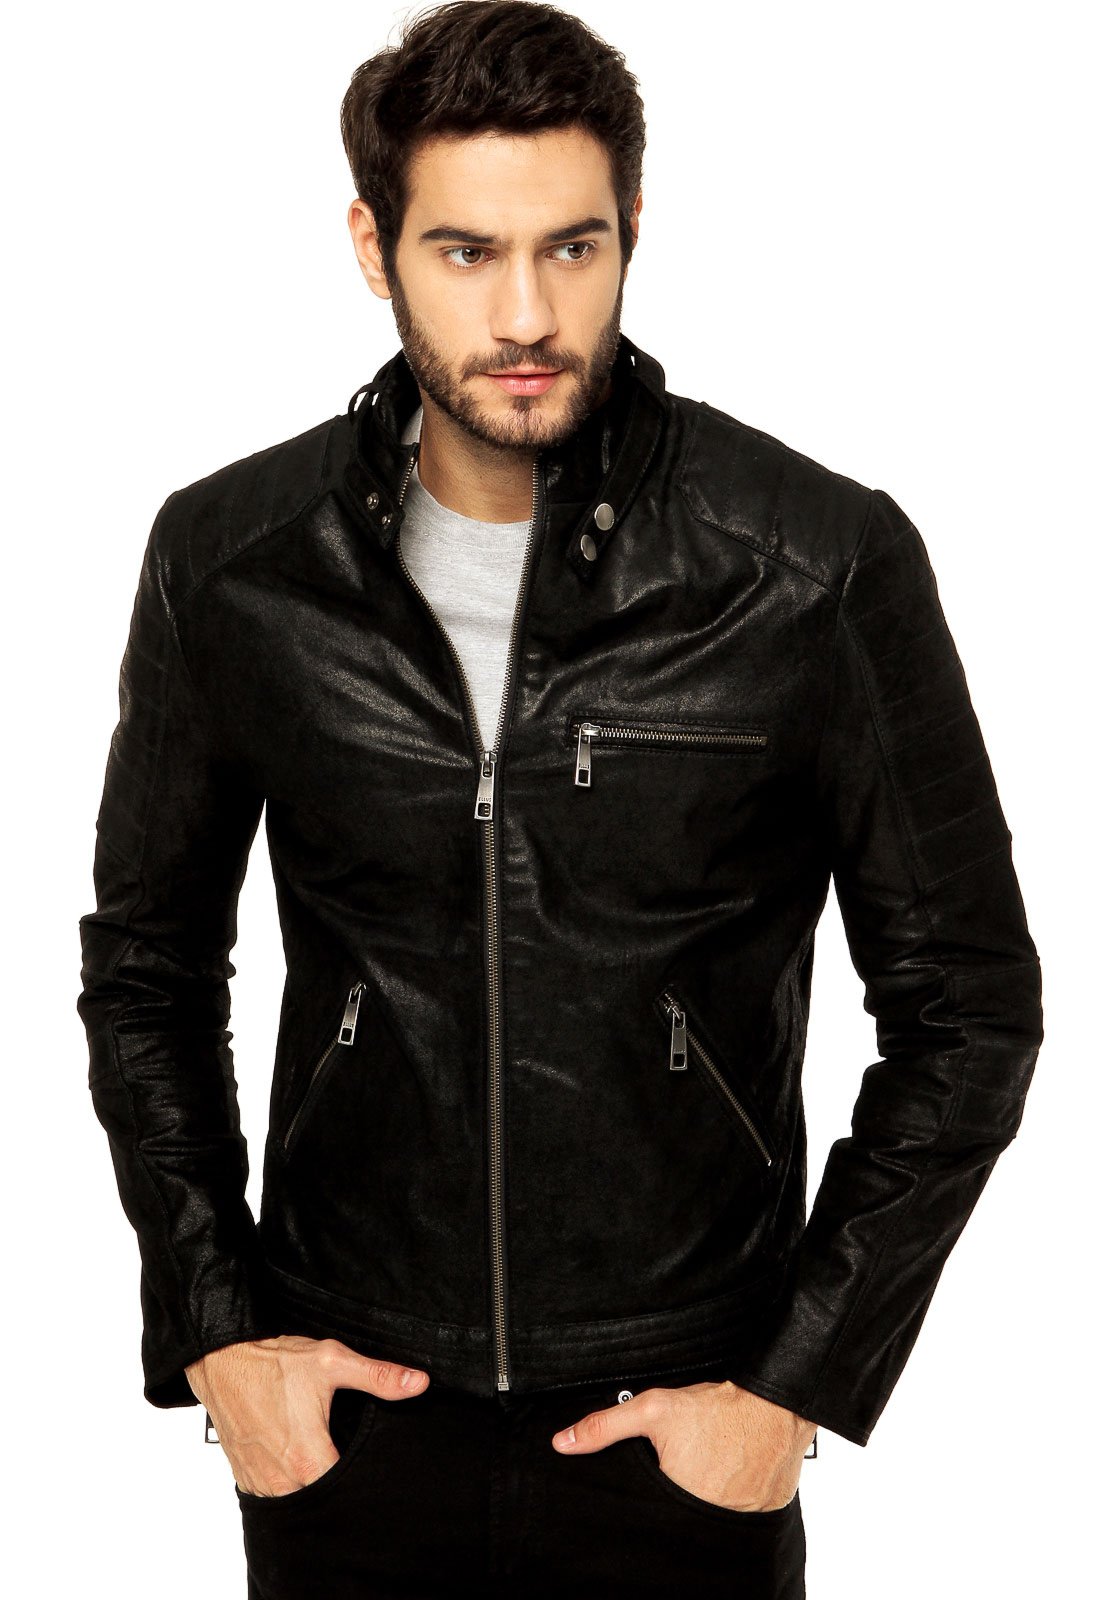 imagens de jaqueta de couro masculina